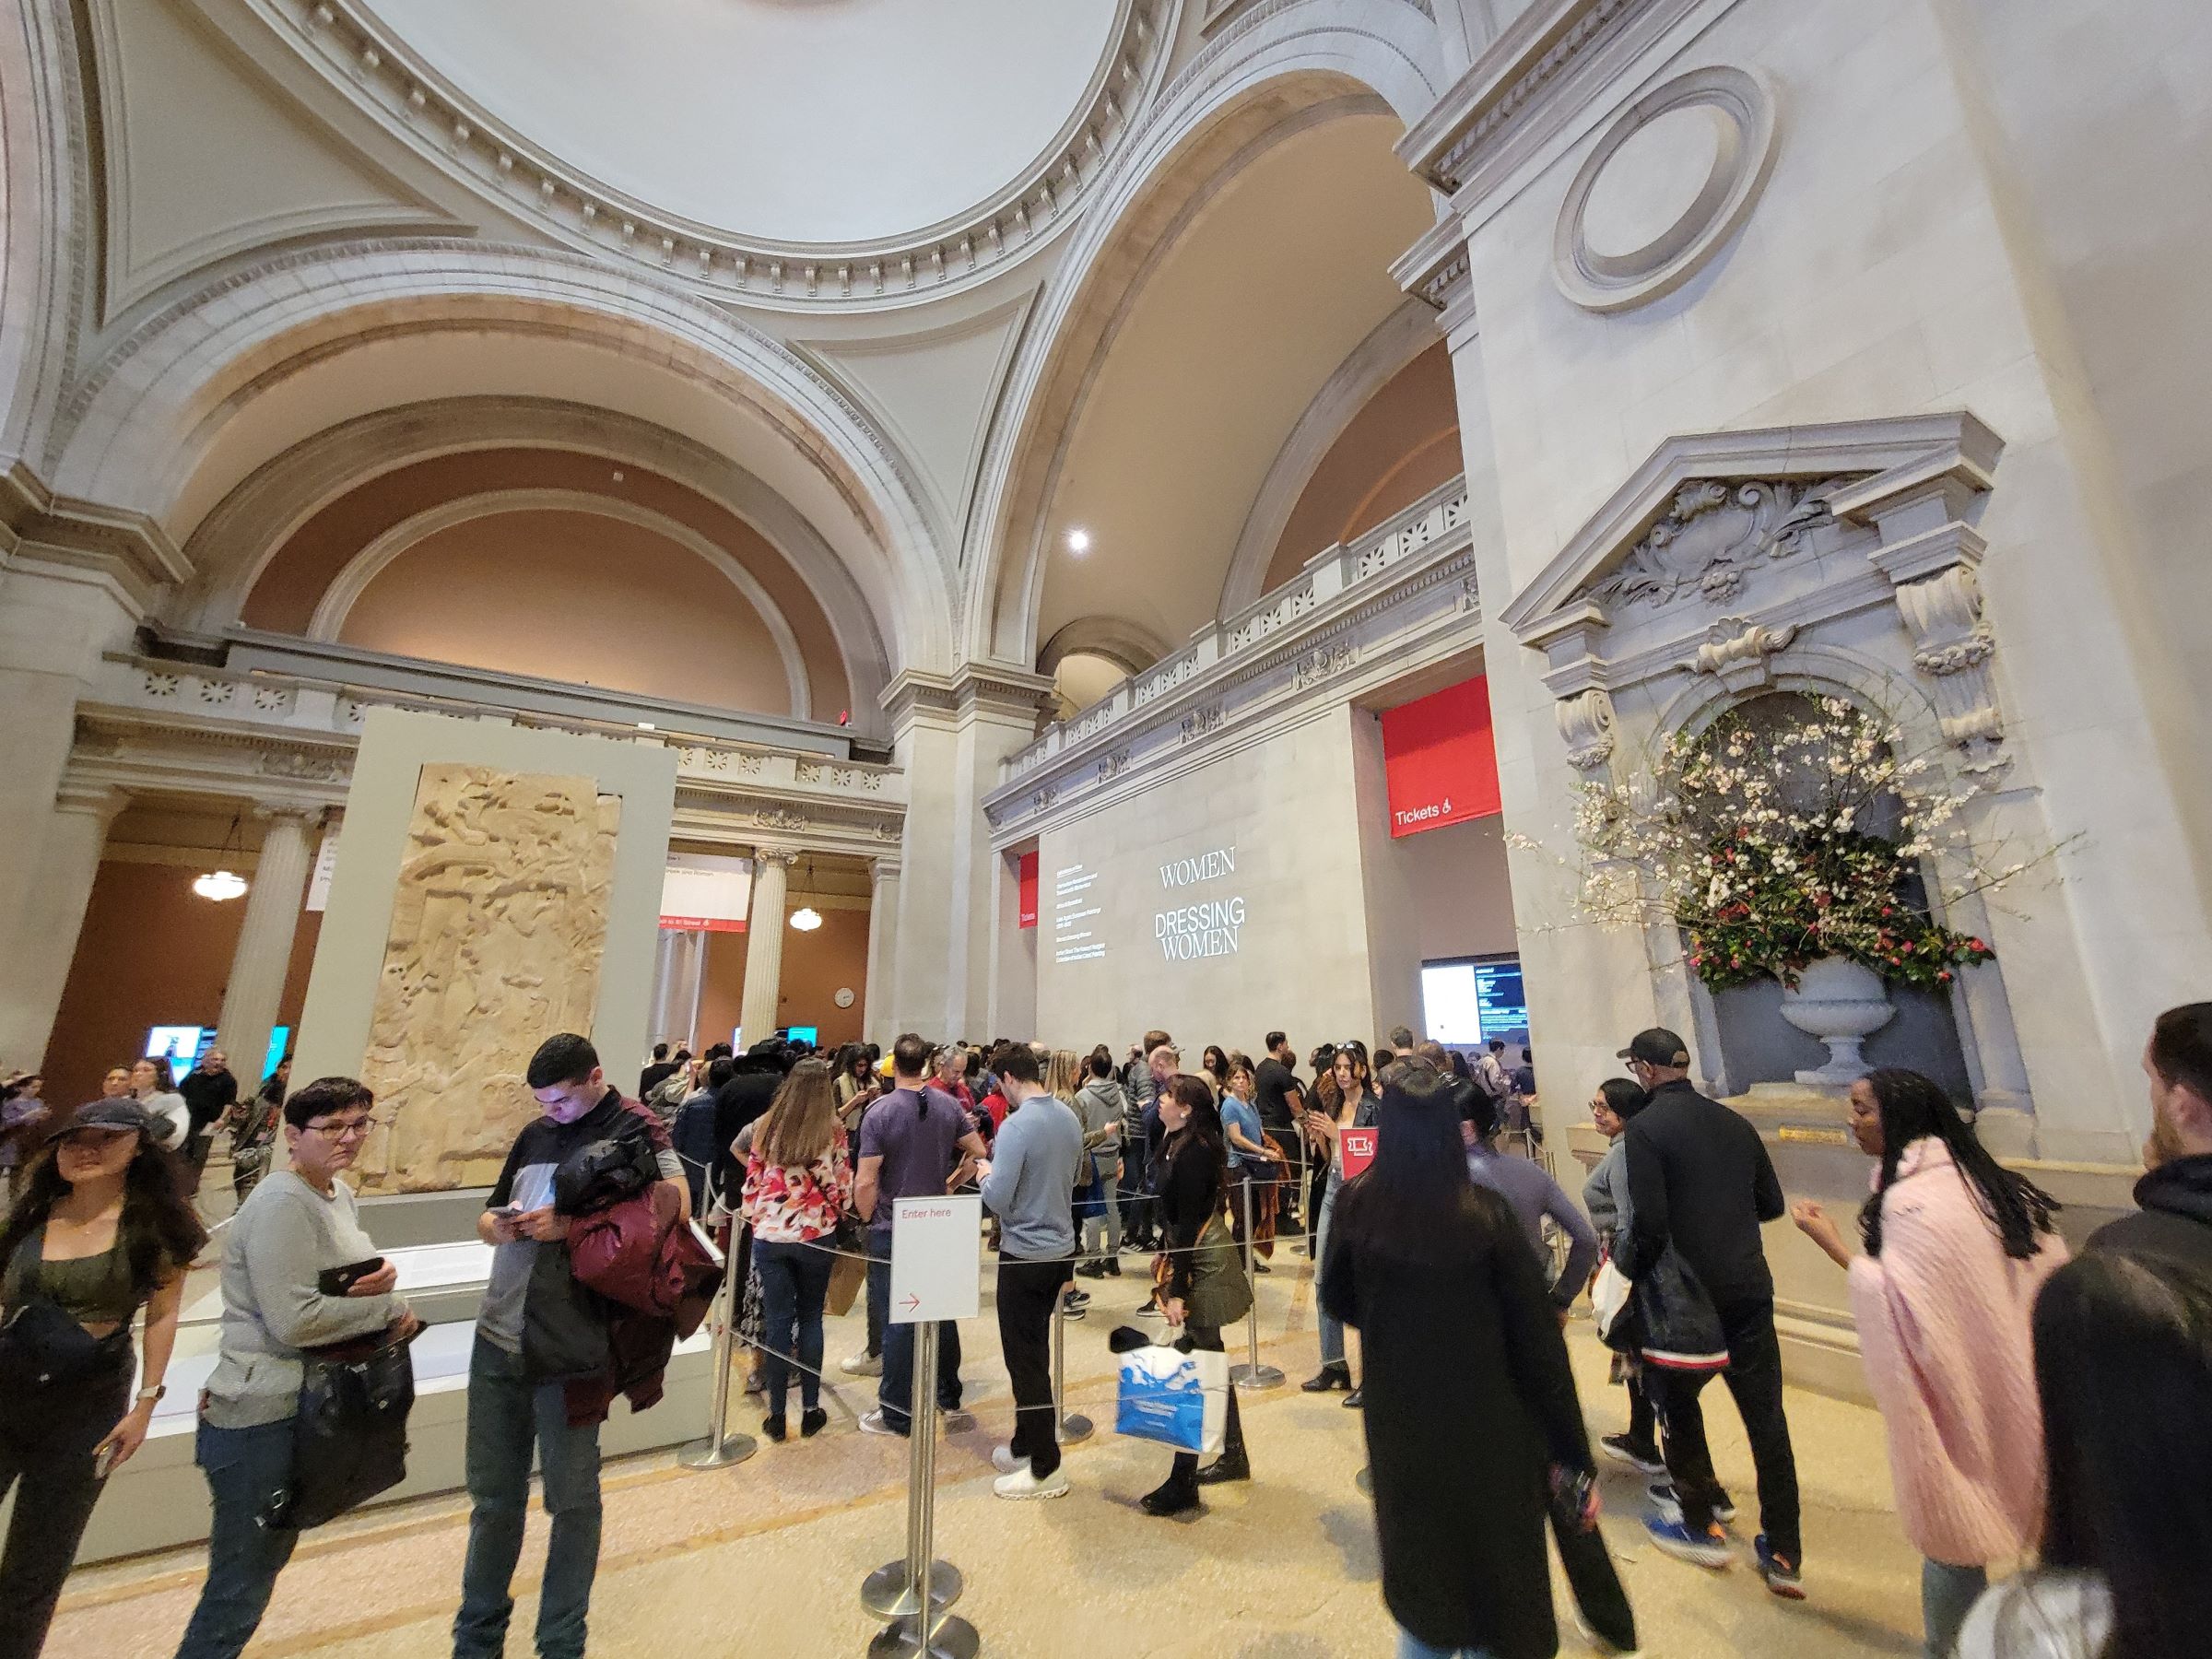 뉴욕 맨하탄 메트로폴리탄 미술관의 모든 전시실을 빠짐없이 다 둘러보려면, 도대체 얼마를 걸어야 할까?